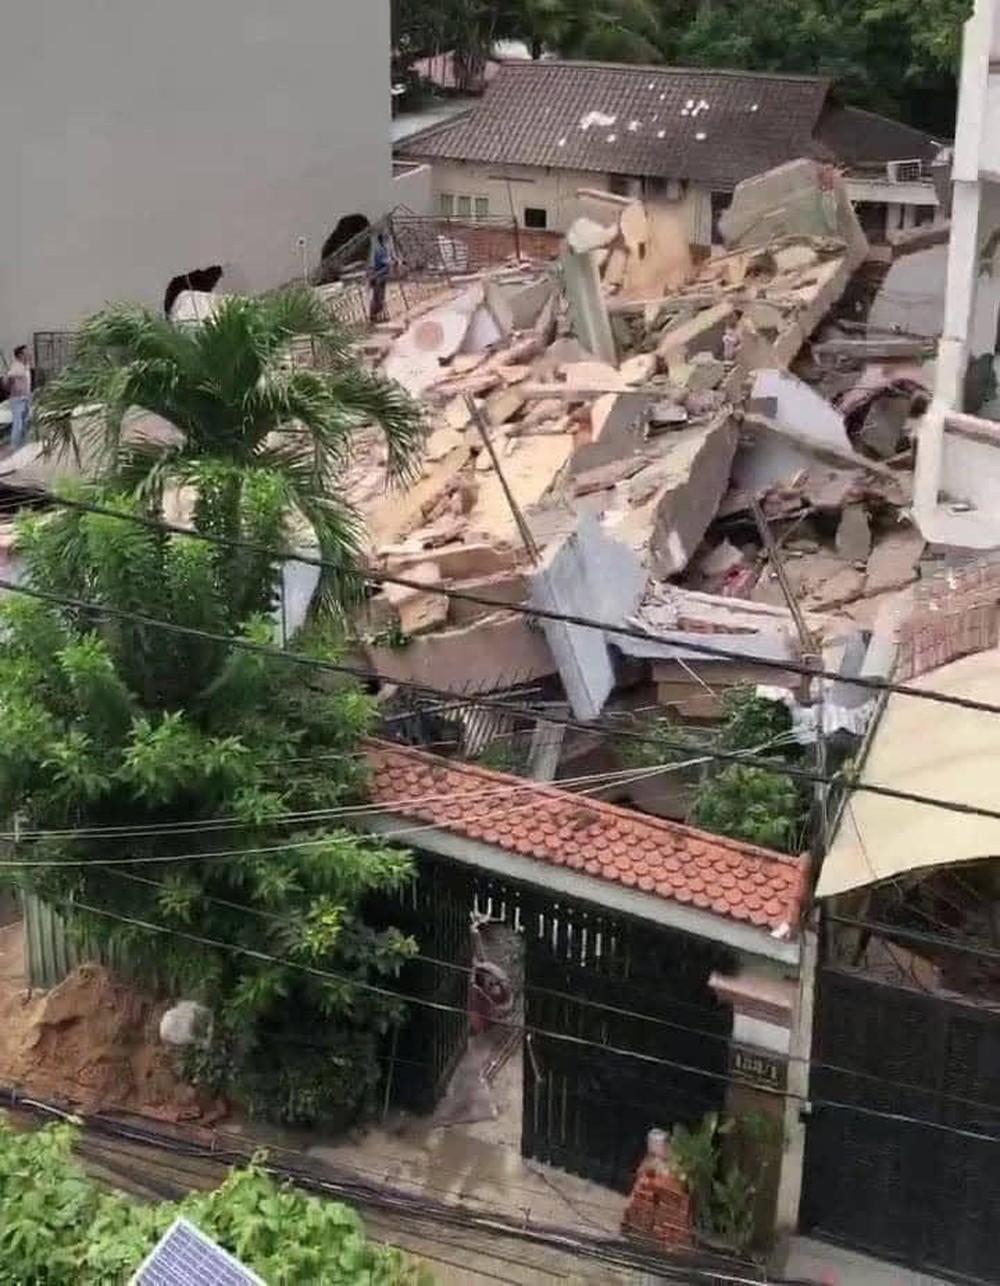 Camera an ninh ghi khoảnh khắc sập căn nhà 4 tầng ở TPHCM, 7 người mắc kẹt - Ảnh 2.